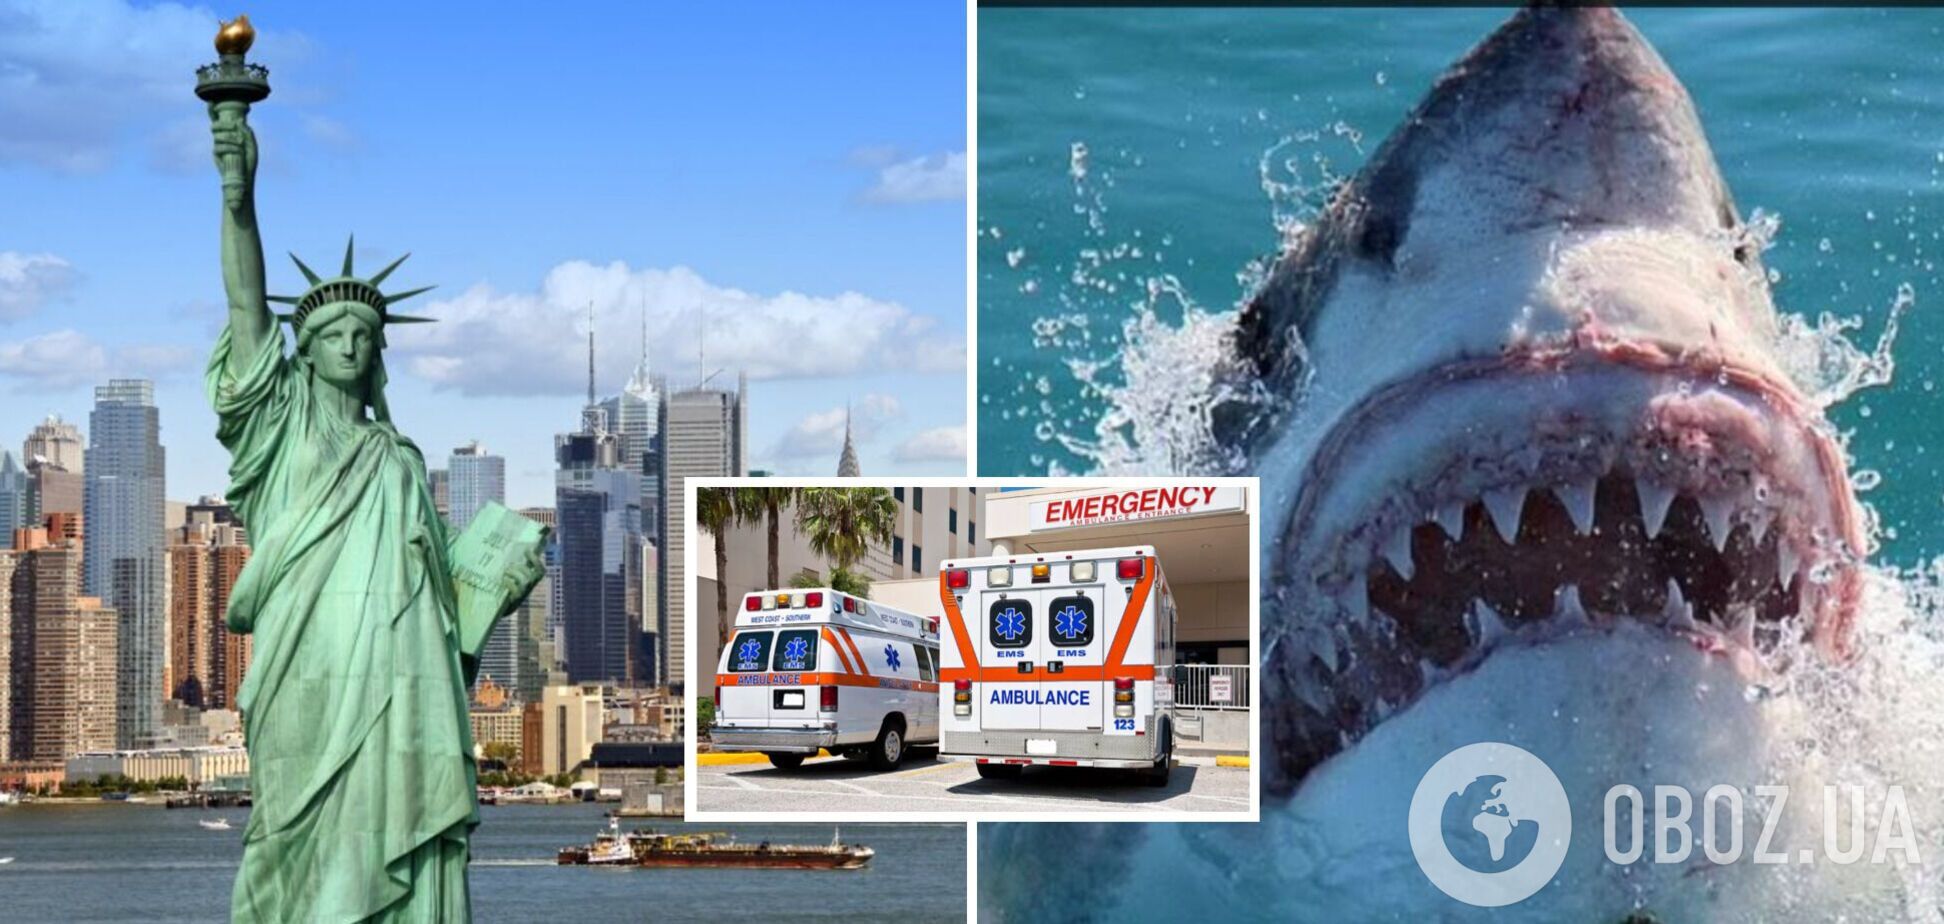 В Нью-Йорке акула напала на женщину на пляже, пострадавшую доставили в больницу в критическом состоянии. Видео